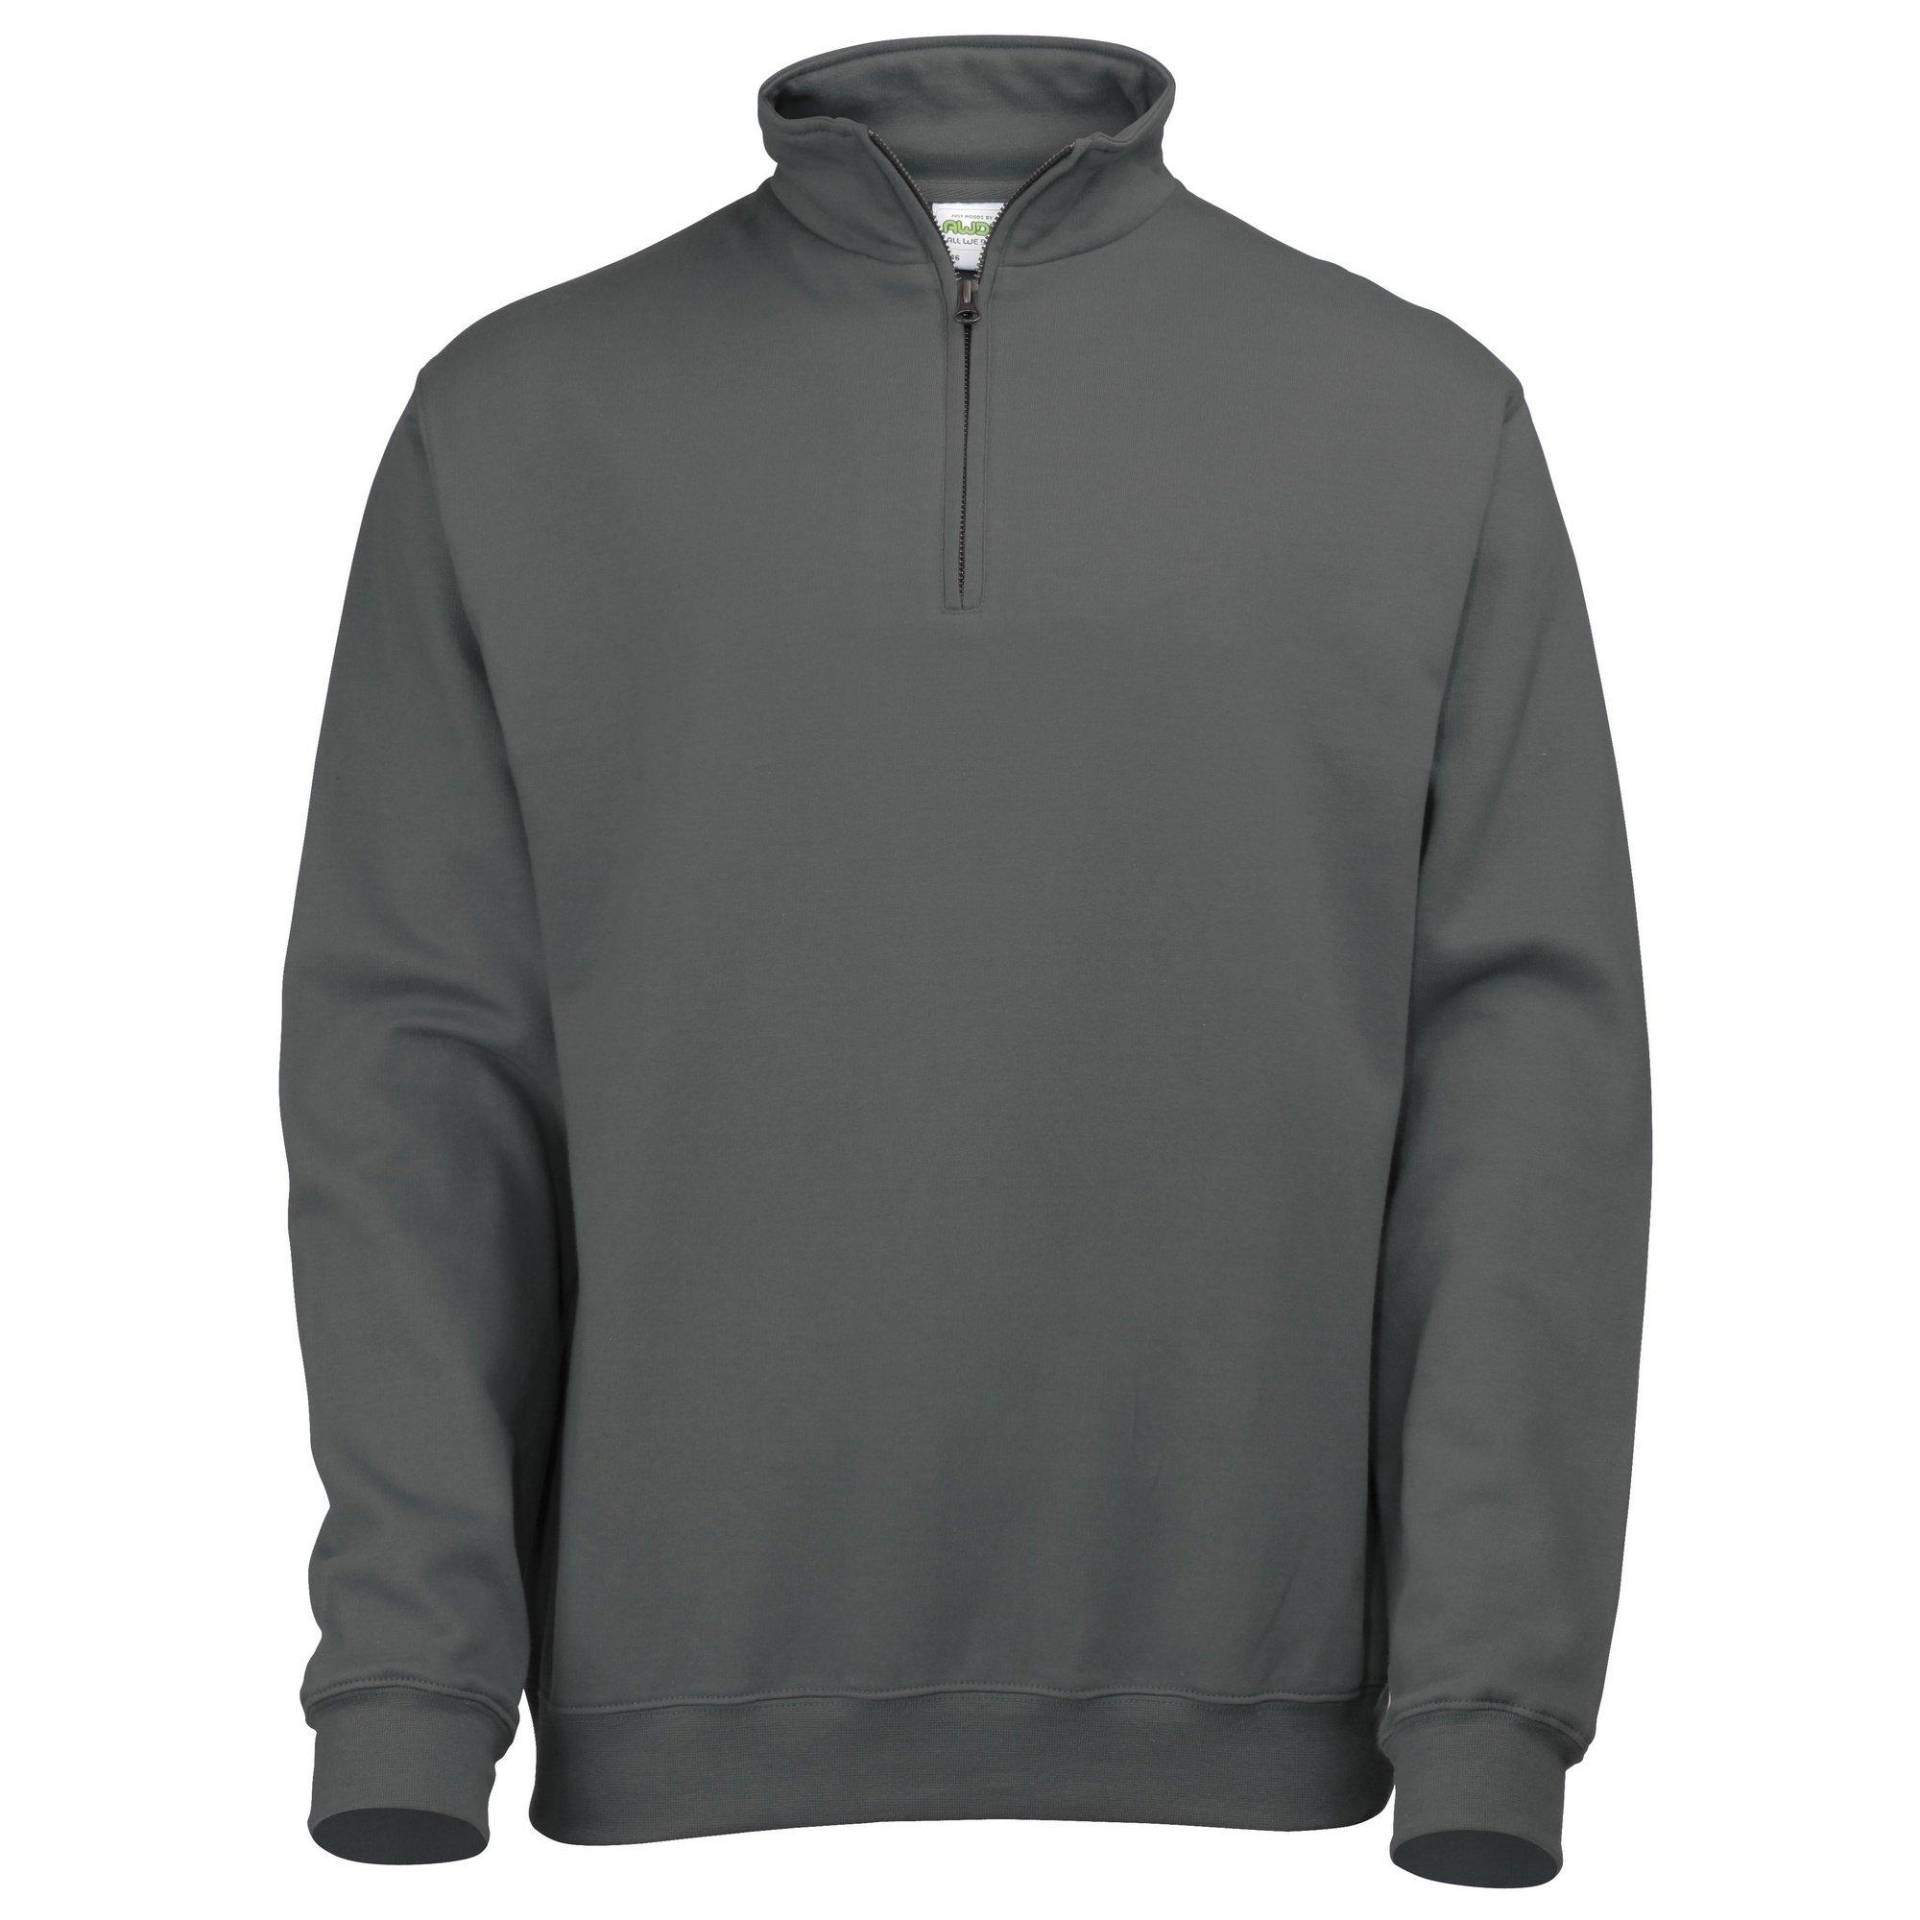 Sweatshirt Pullover Mit Reißverschluss Am Kragen Herren Charcoal Black XXL von AWDis